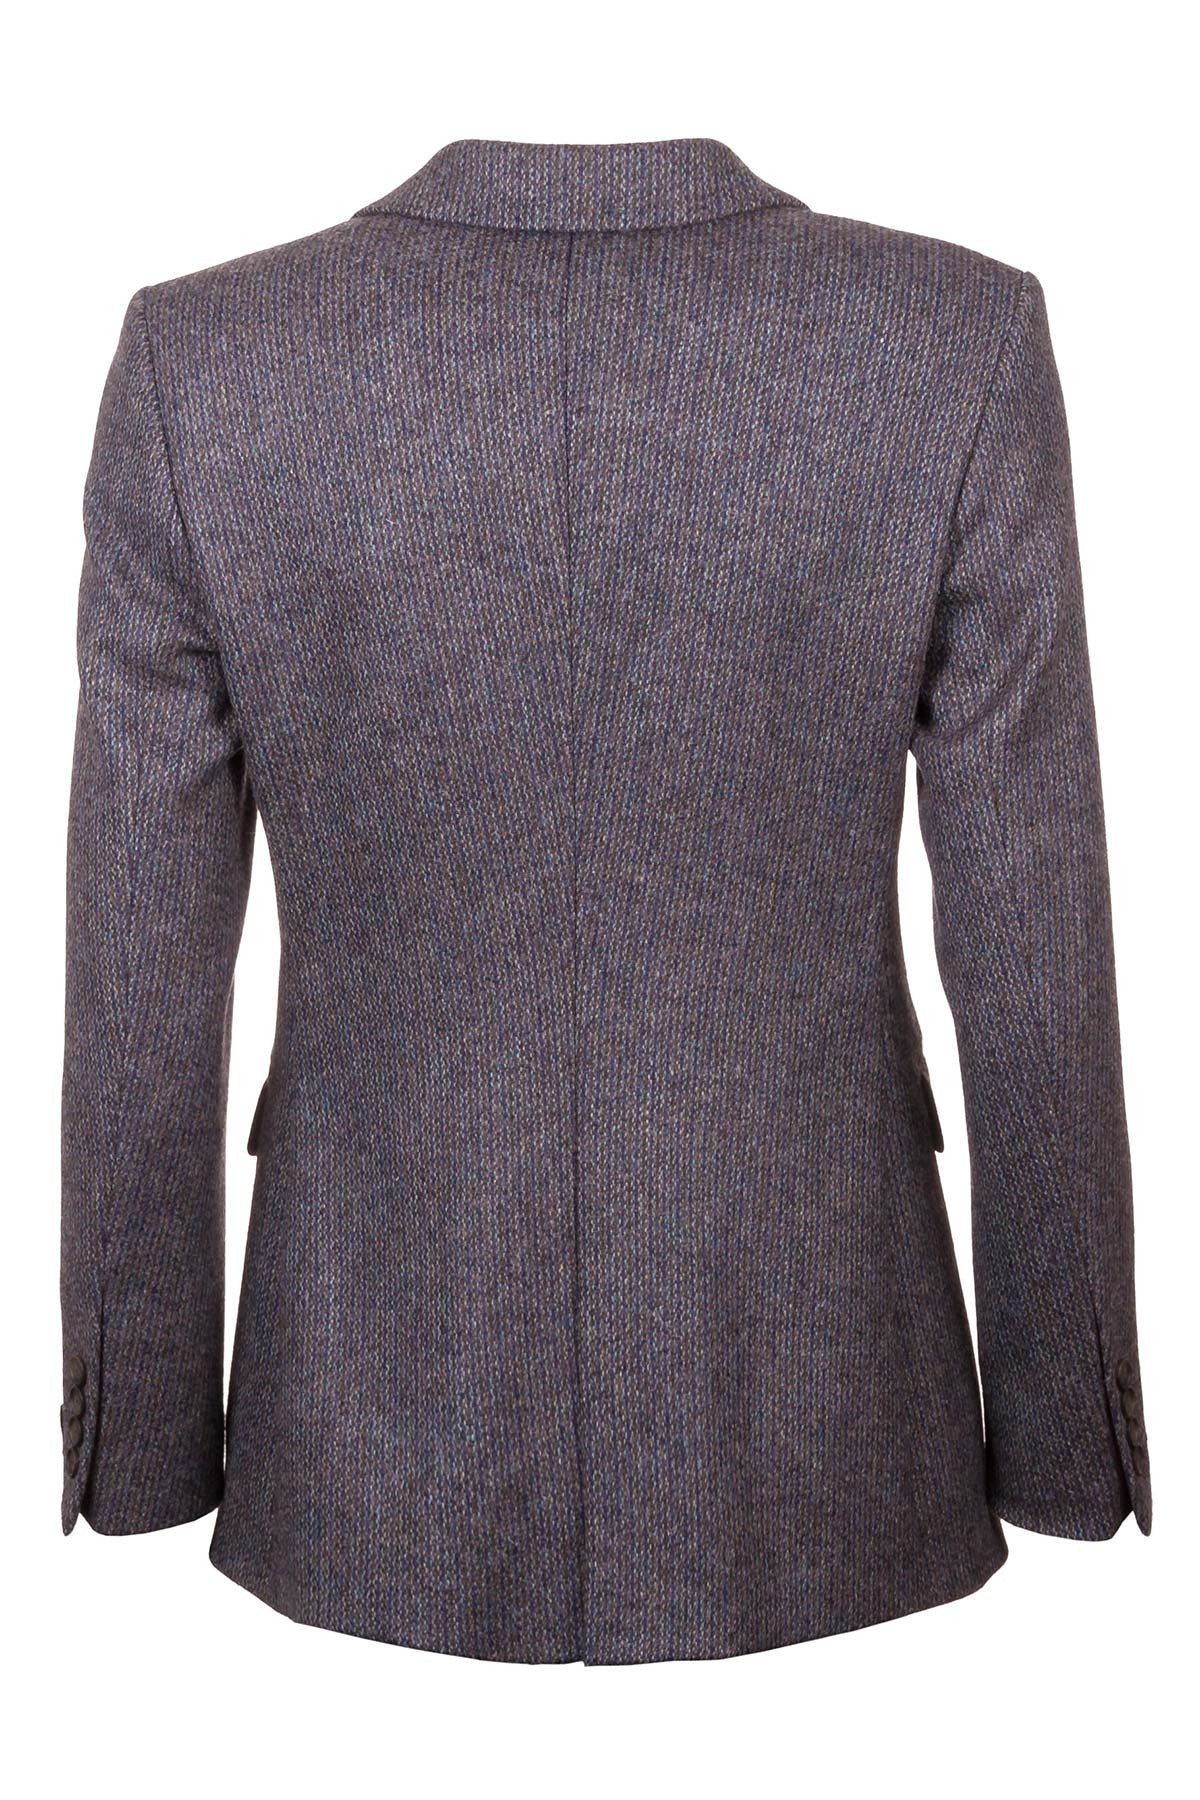 Ladies Long Tweed Blazer UK | Womens Casual Tweed Blazer | Rydale